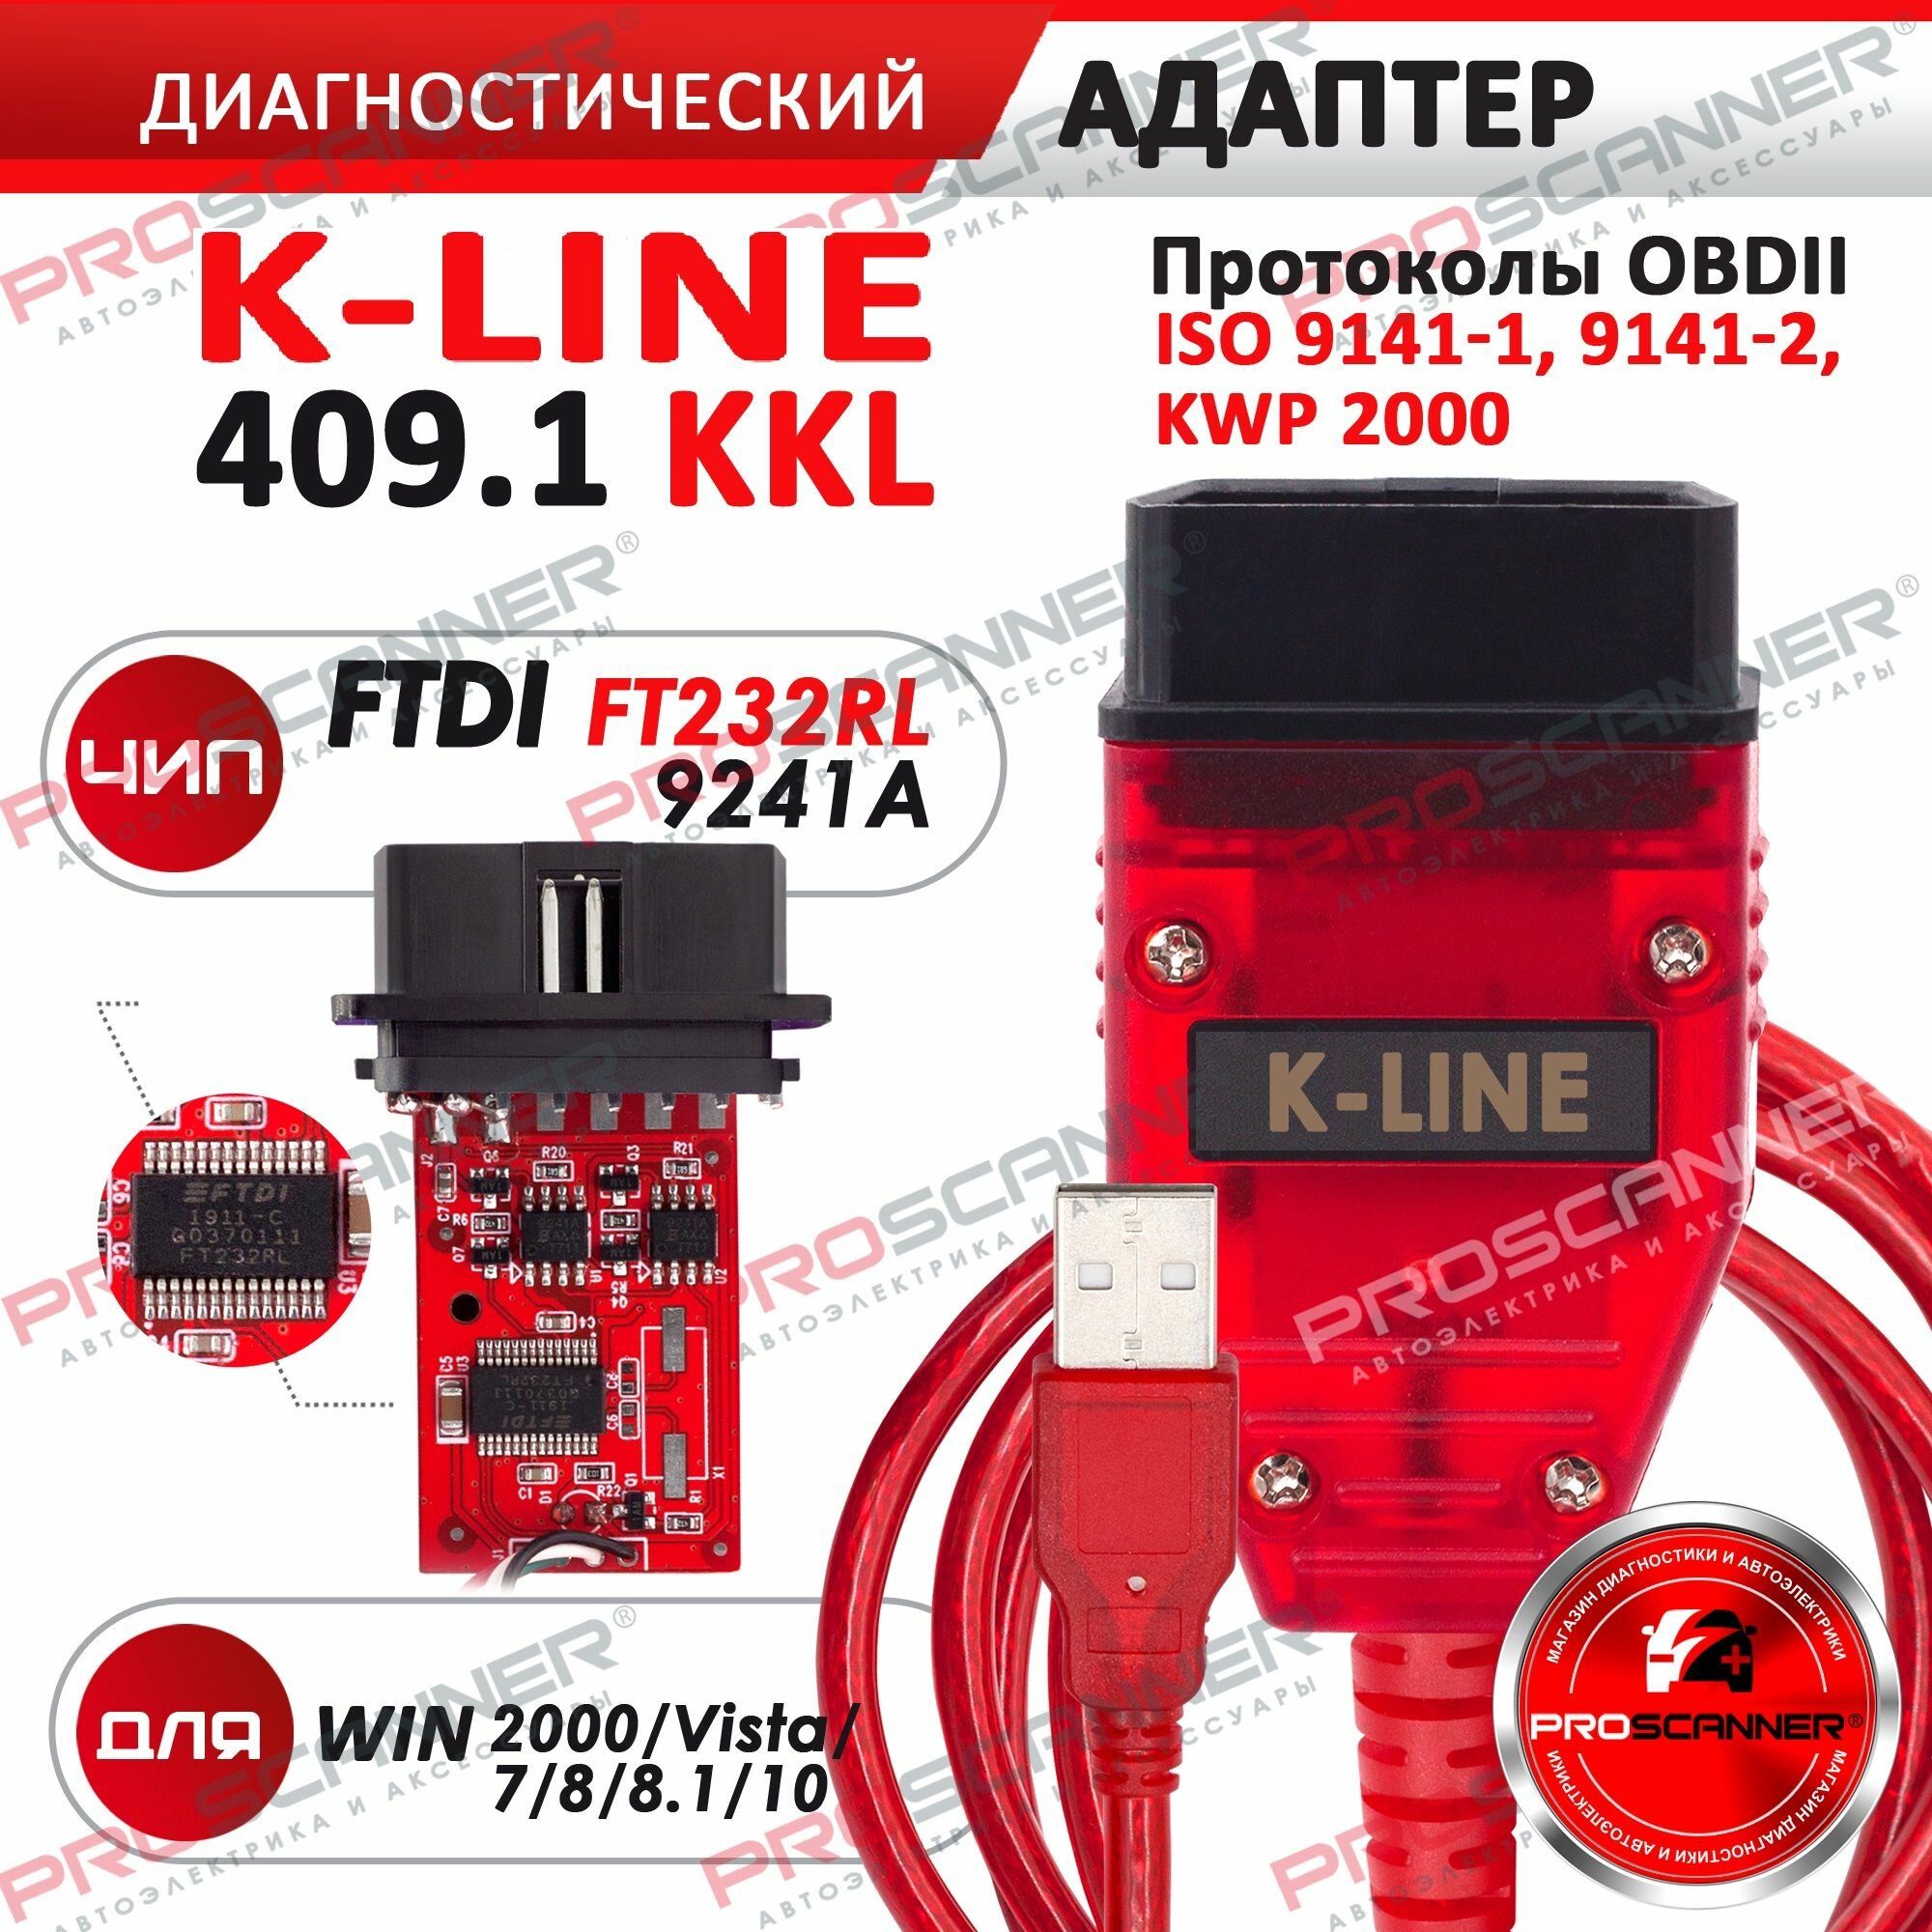 Автосканер K-Line KKL 409.1 Fiat Ecu Scan чип FTDI FT232RQ с переключателем VAGCOM